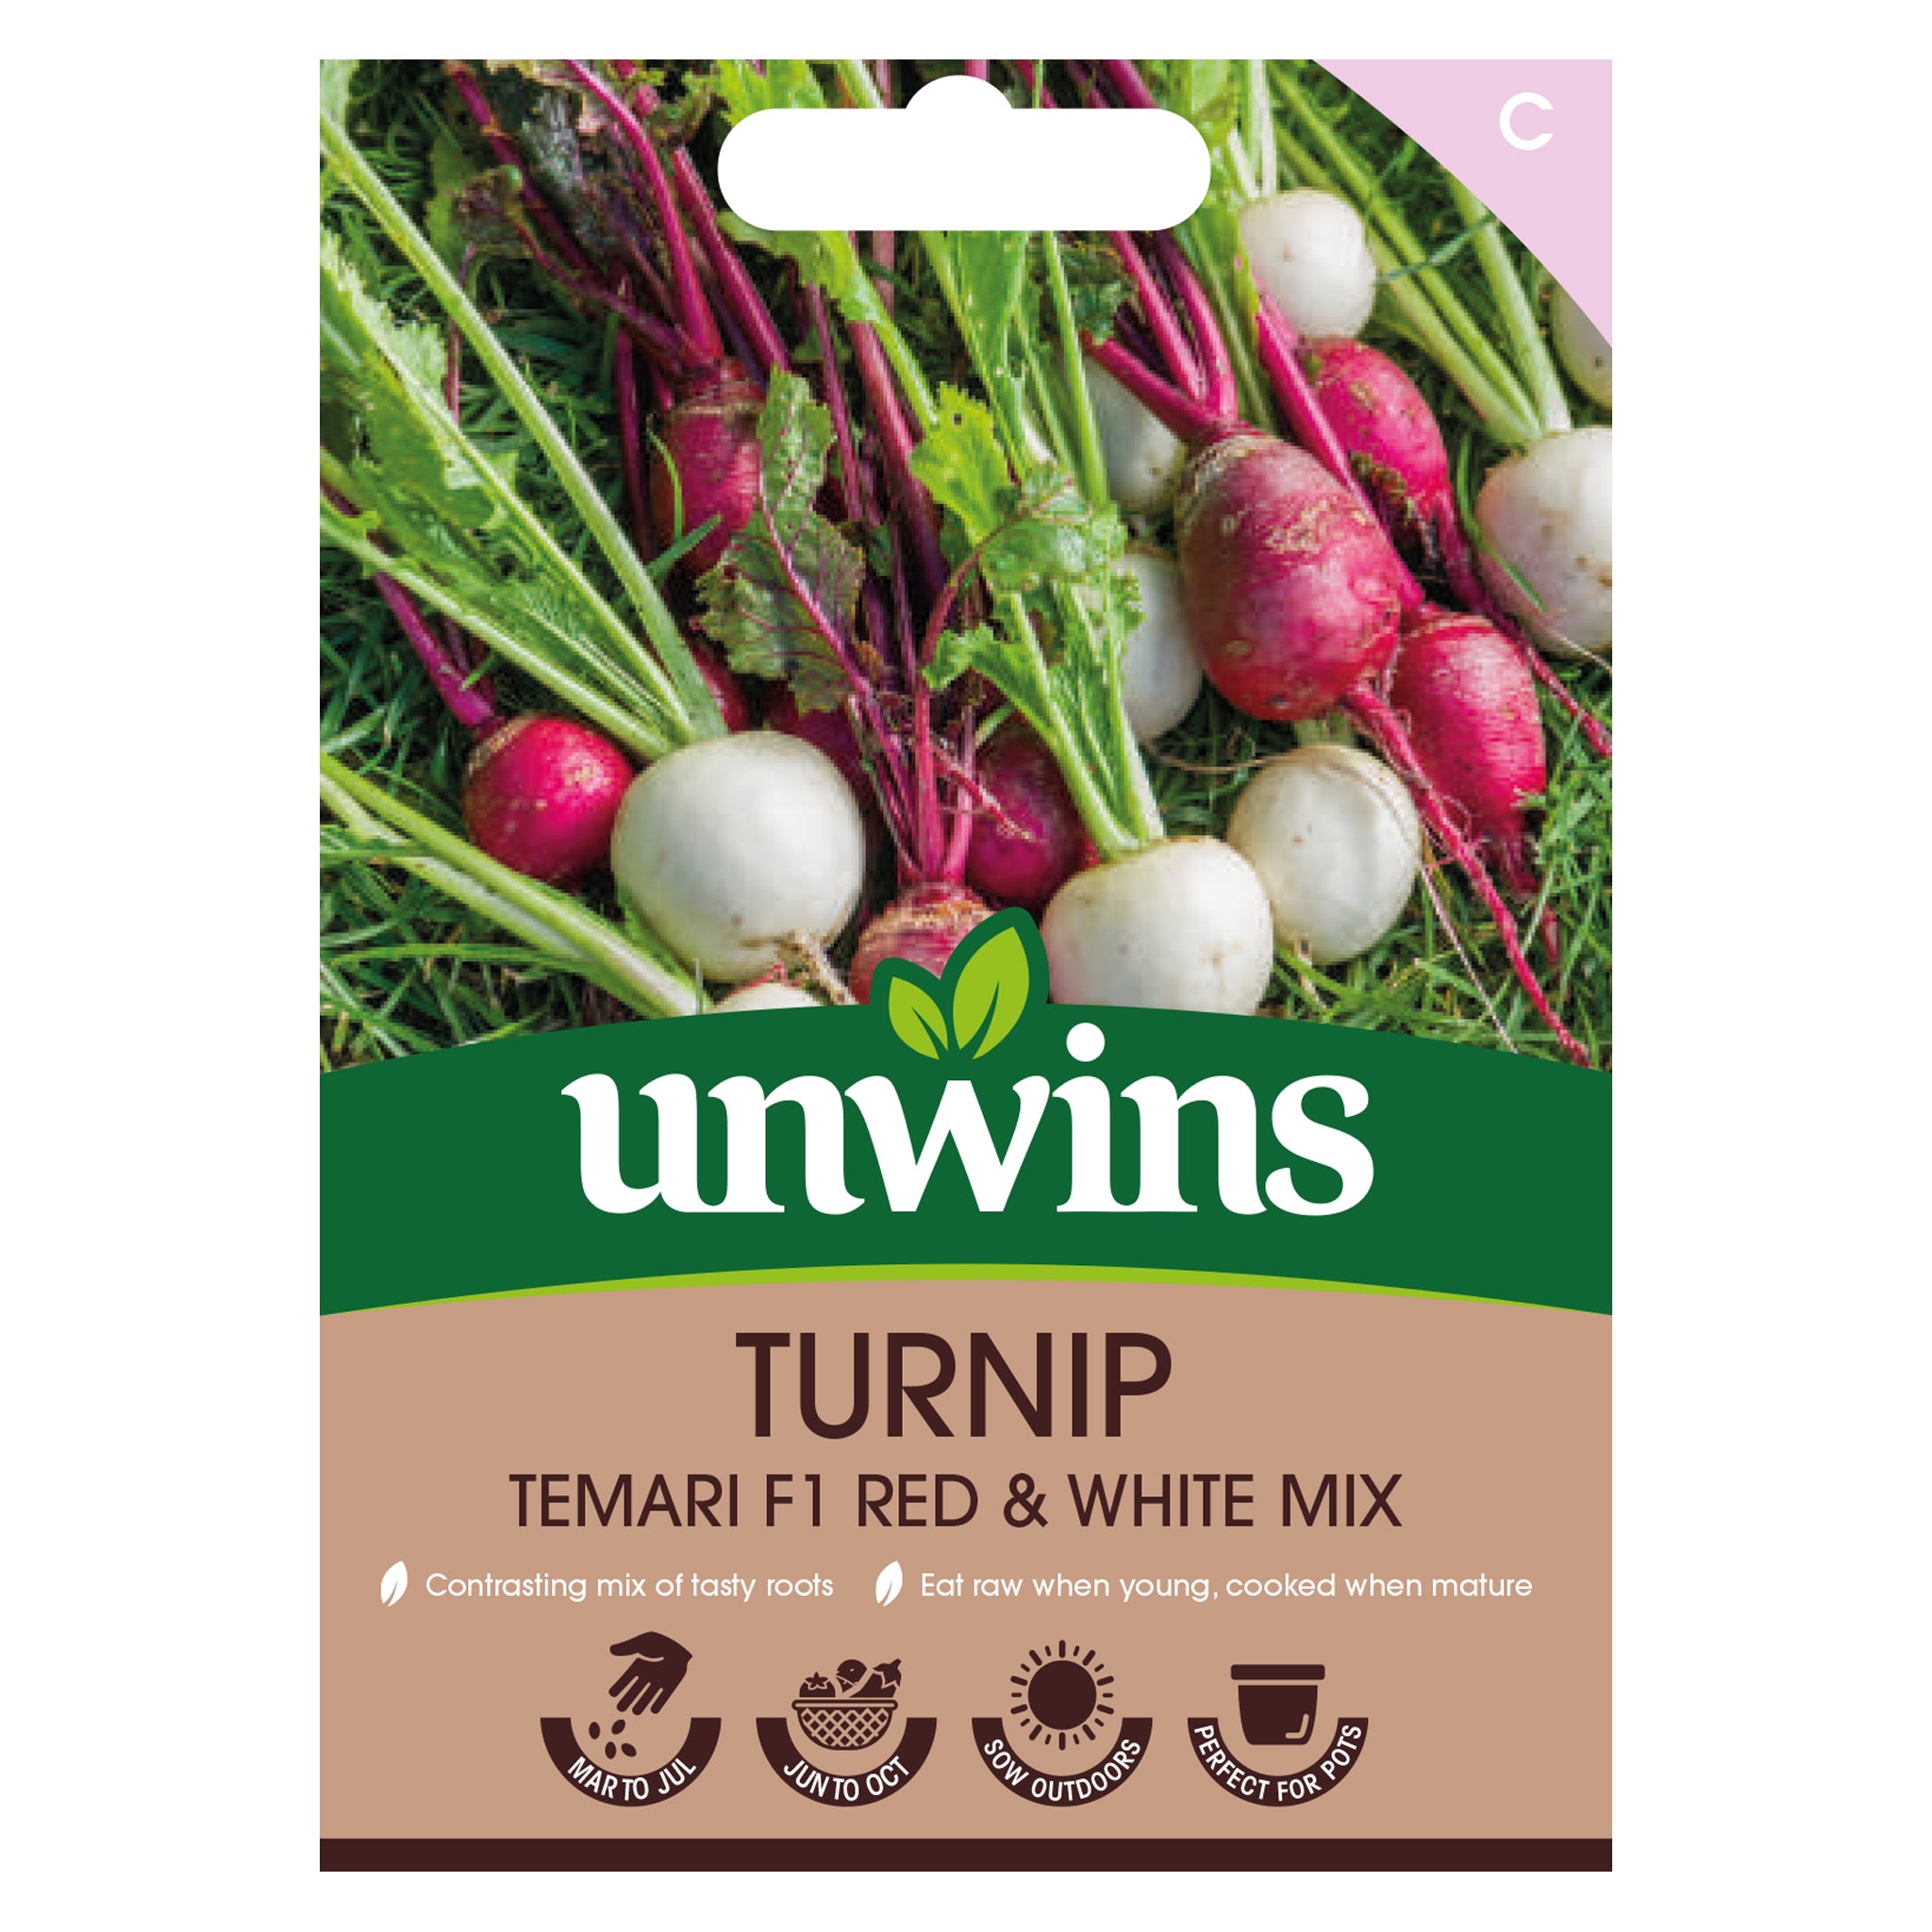 Unwins Turnip Temari F1 Red and White Mix Seeds